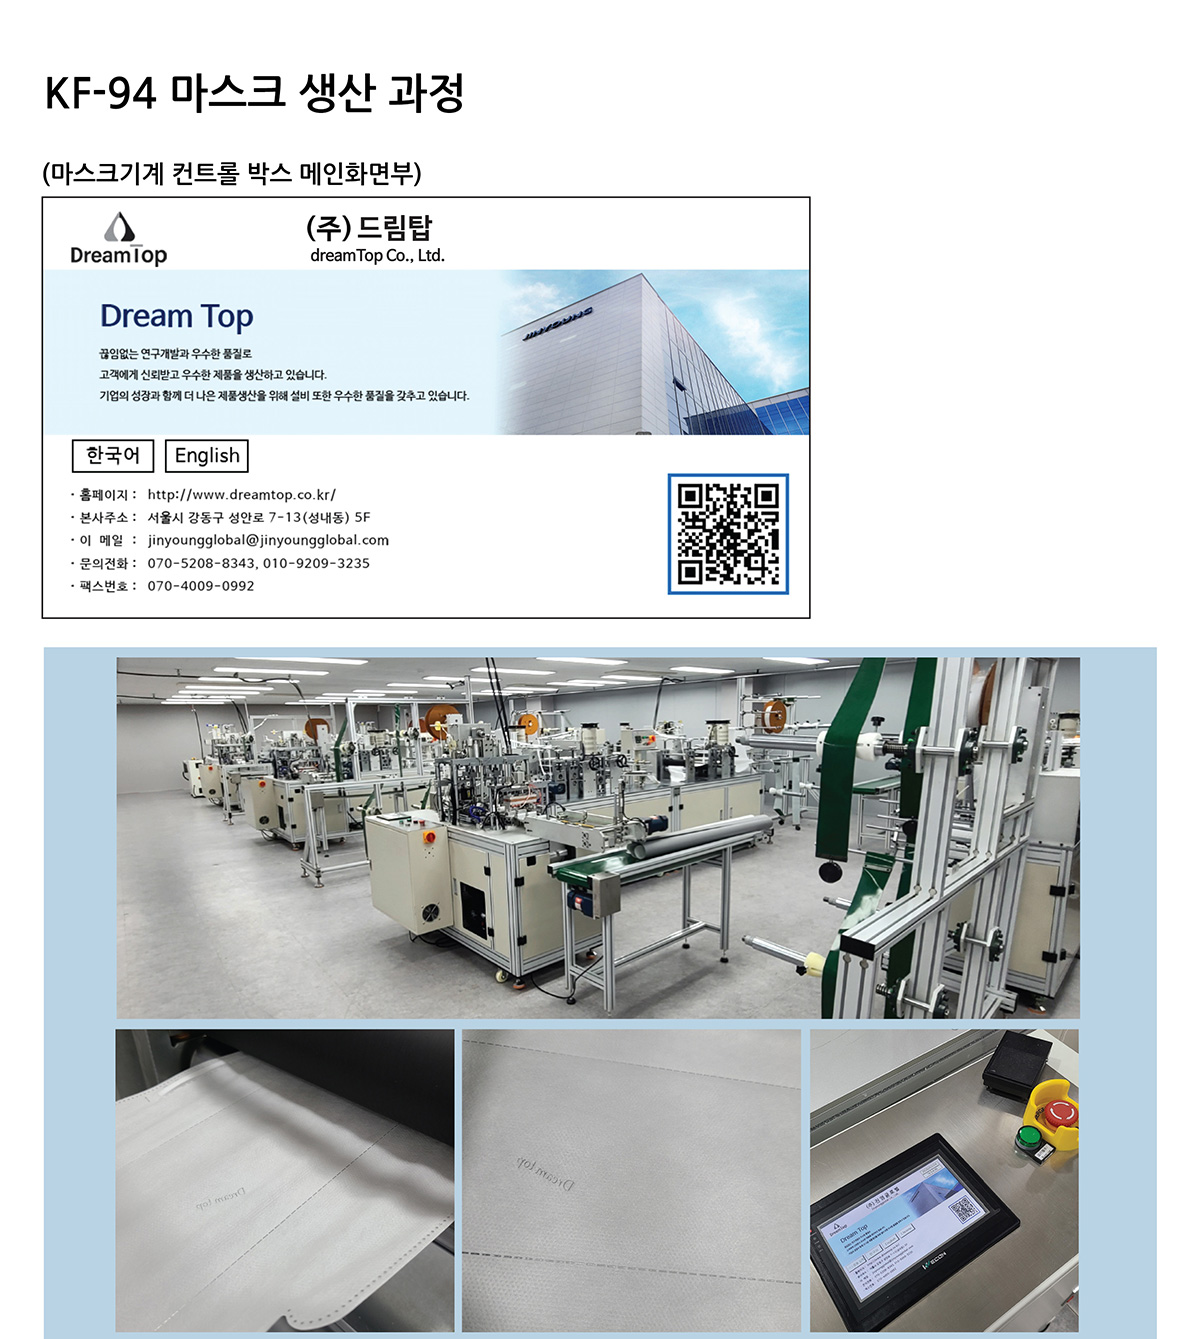 KF94 마스크 생산과정 마스크기계 컨트롤 박스 메인화면부